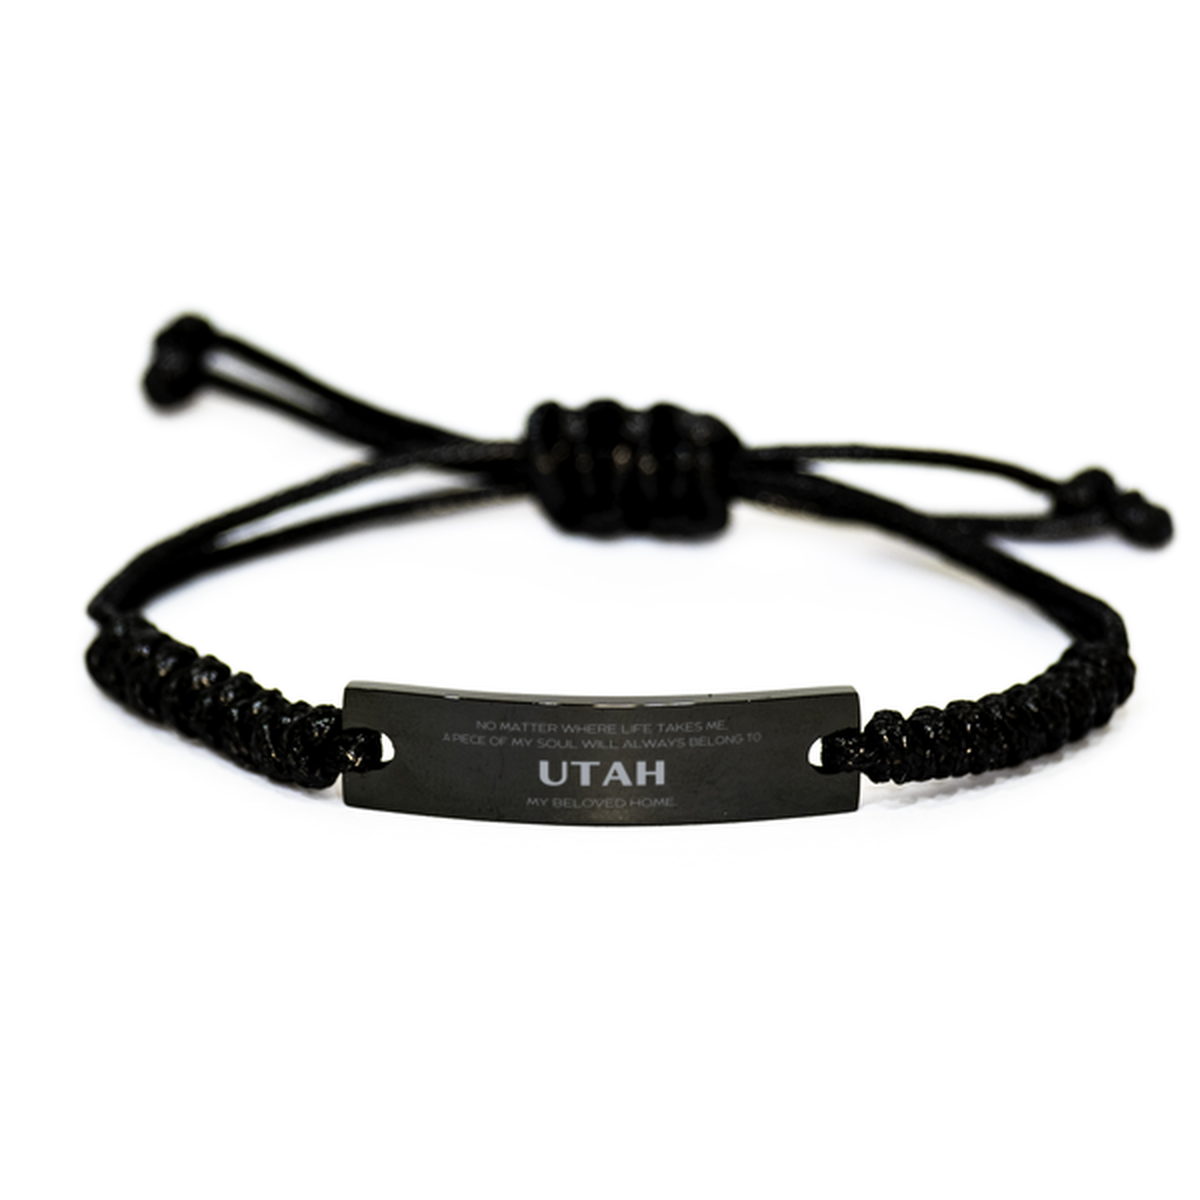 Love Utah State Gifts, My soul will always belong to Utah, Proud Black Rope Bracelet, Birthday Unique Gifts For Utah Men, Women, Friends